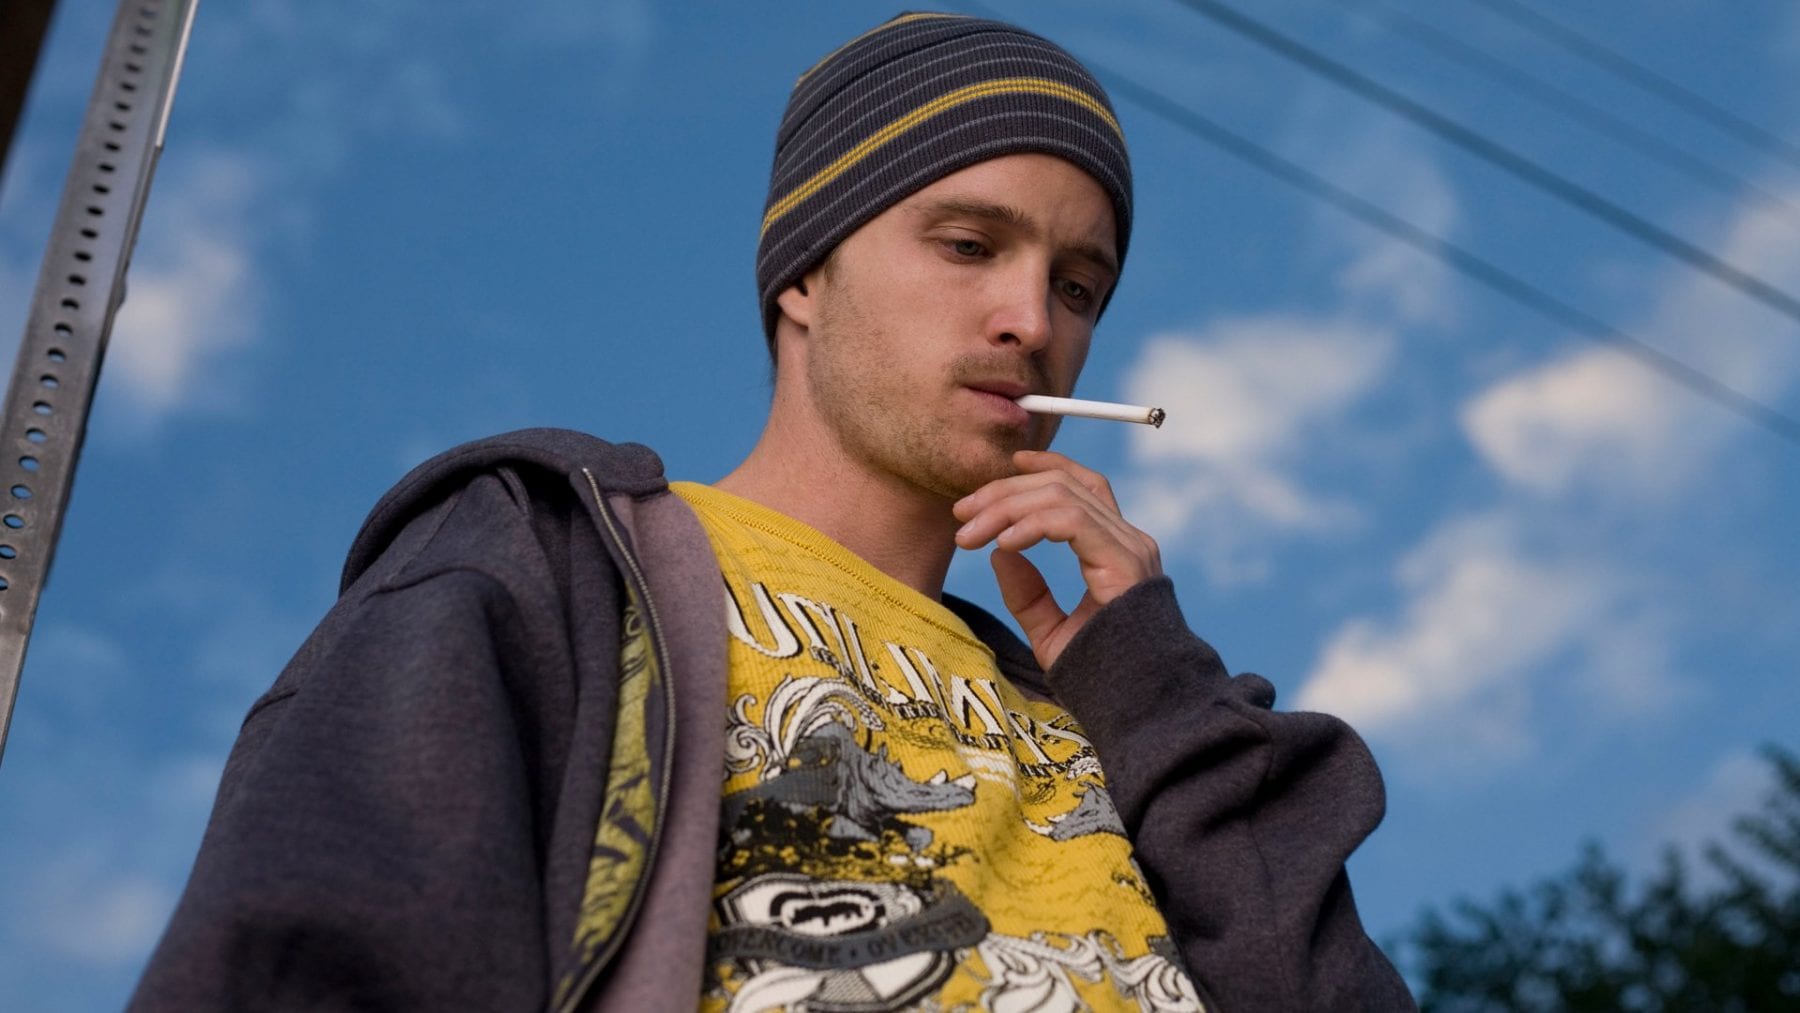 Jesse Pinkman smoking in Breaking Bad